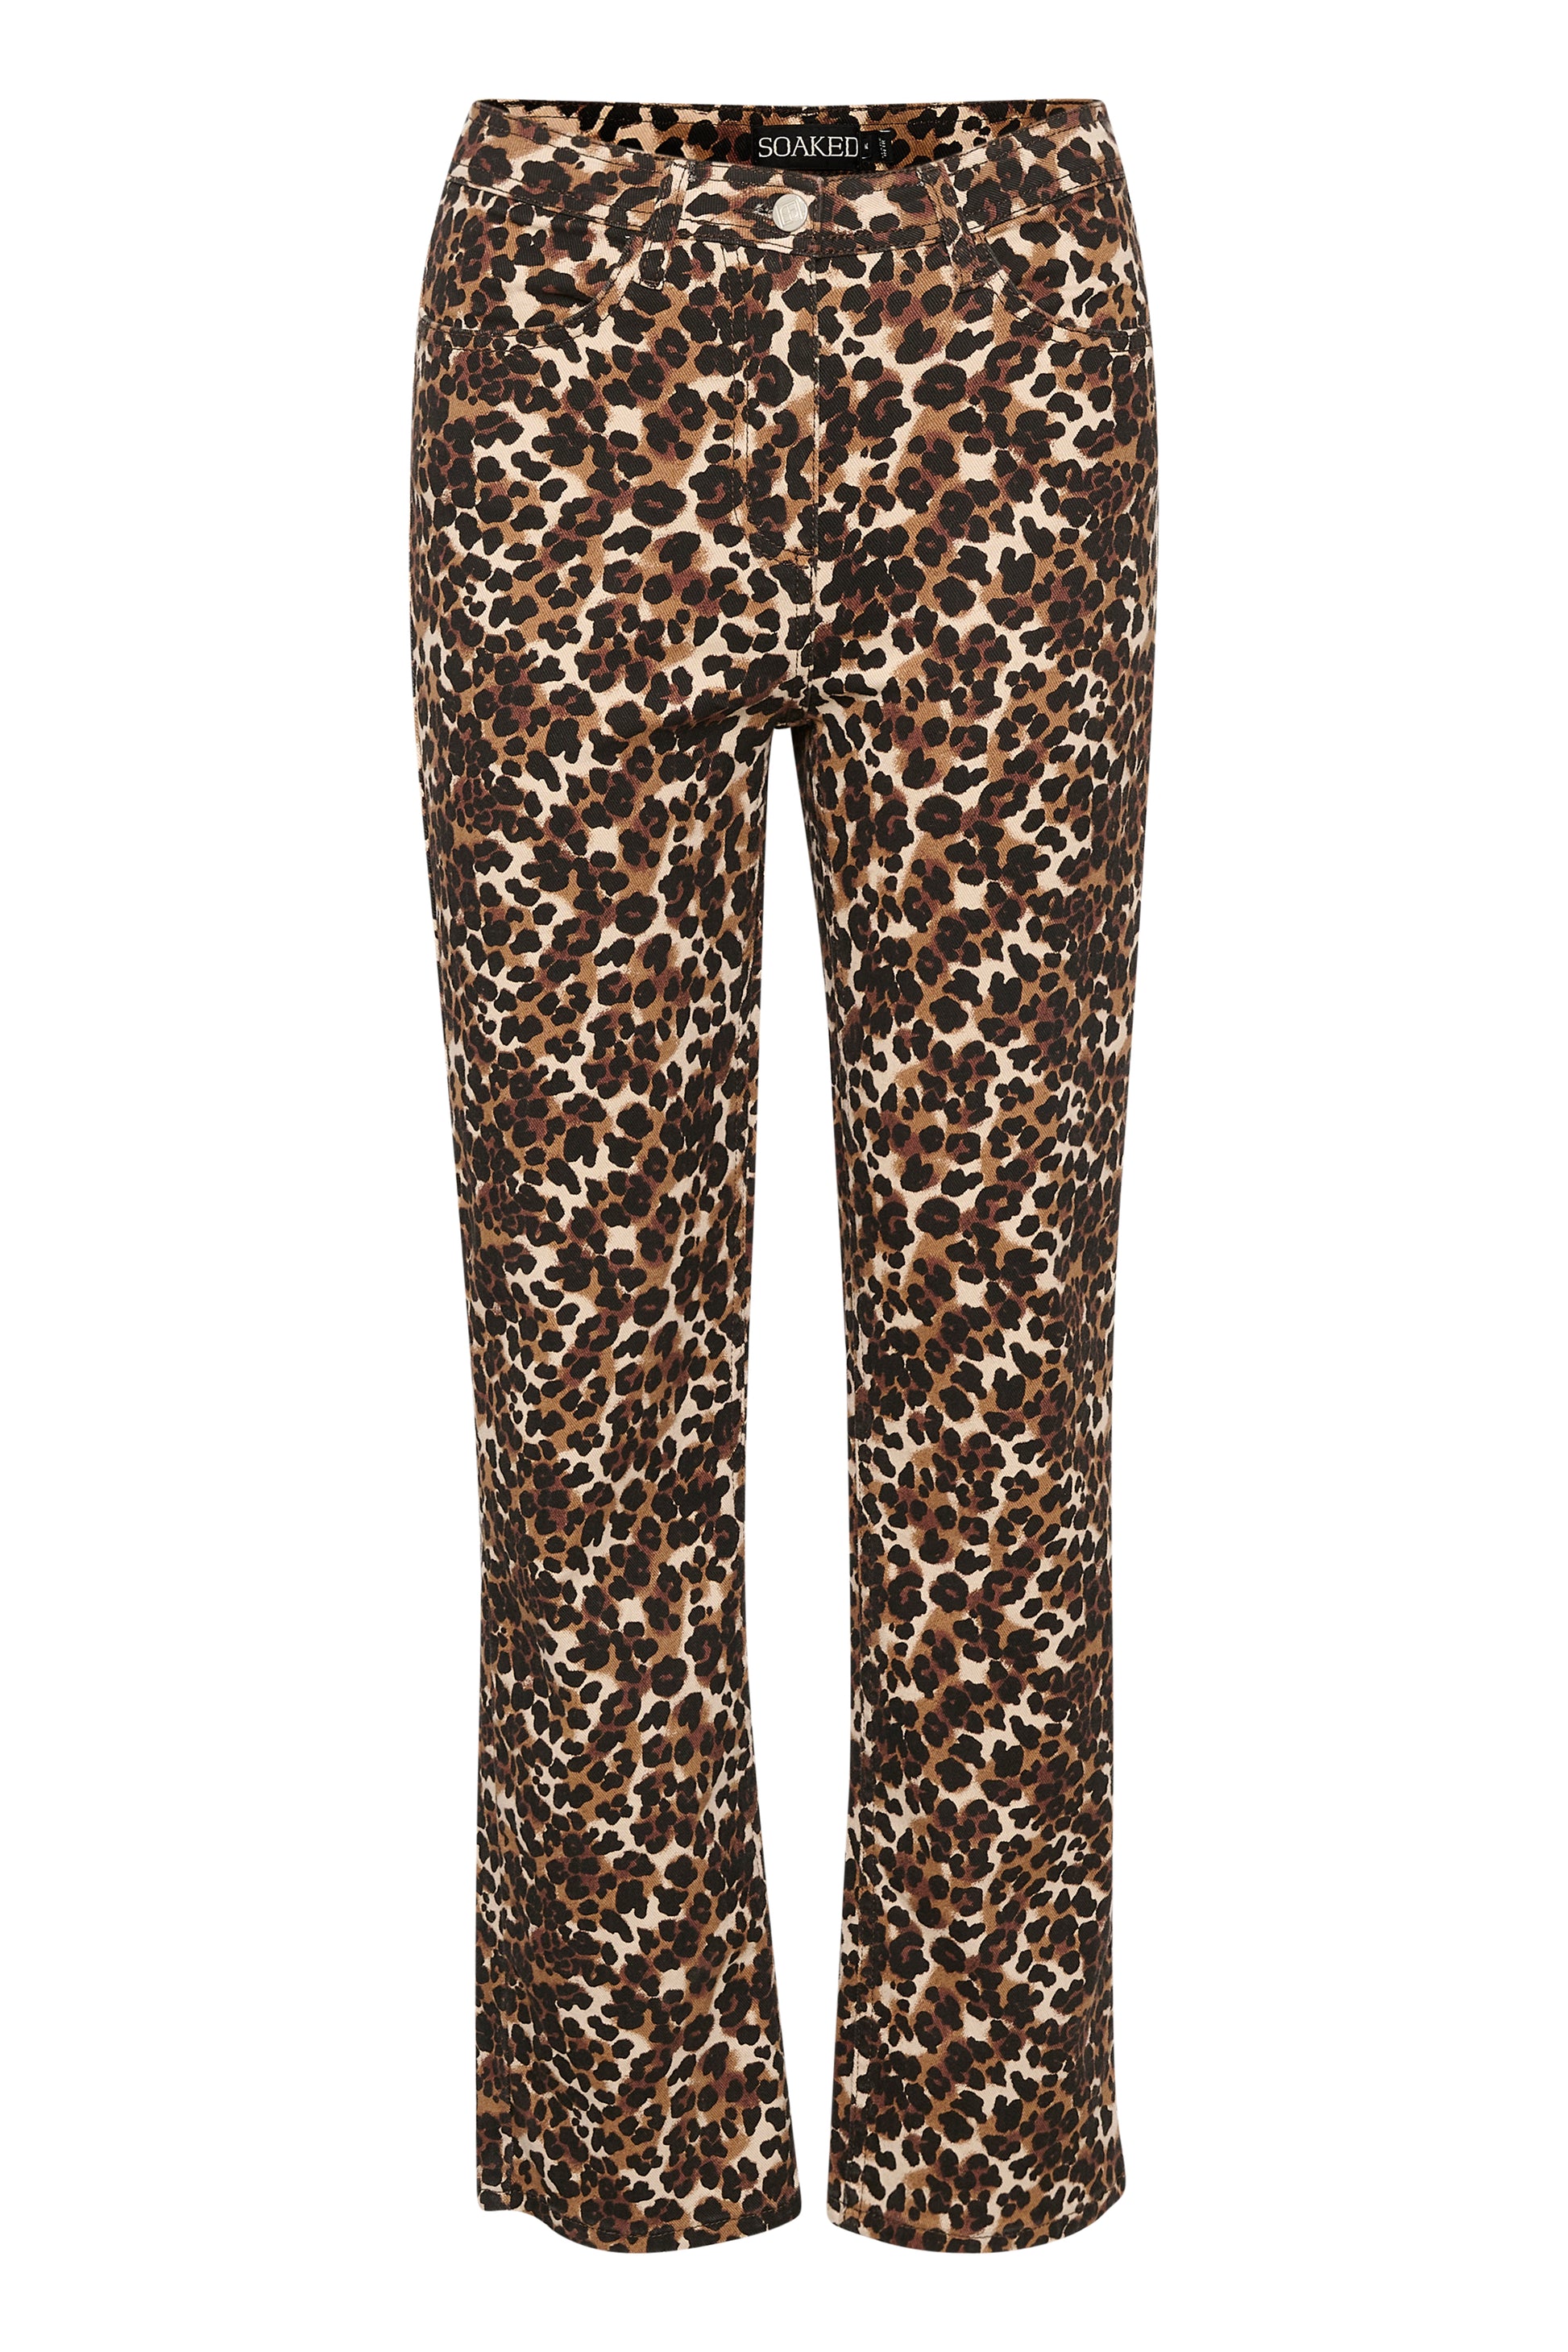 Soaked in Luxury Tessie Printed Denim Pants Jeans Beige Leopard